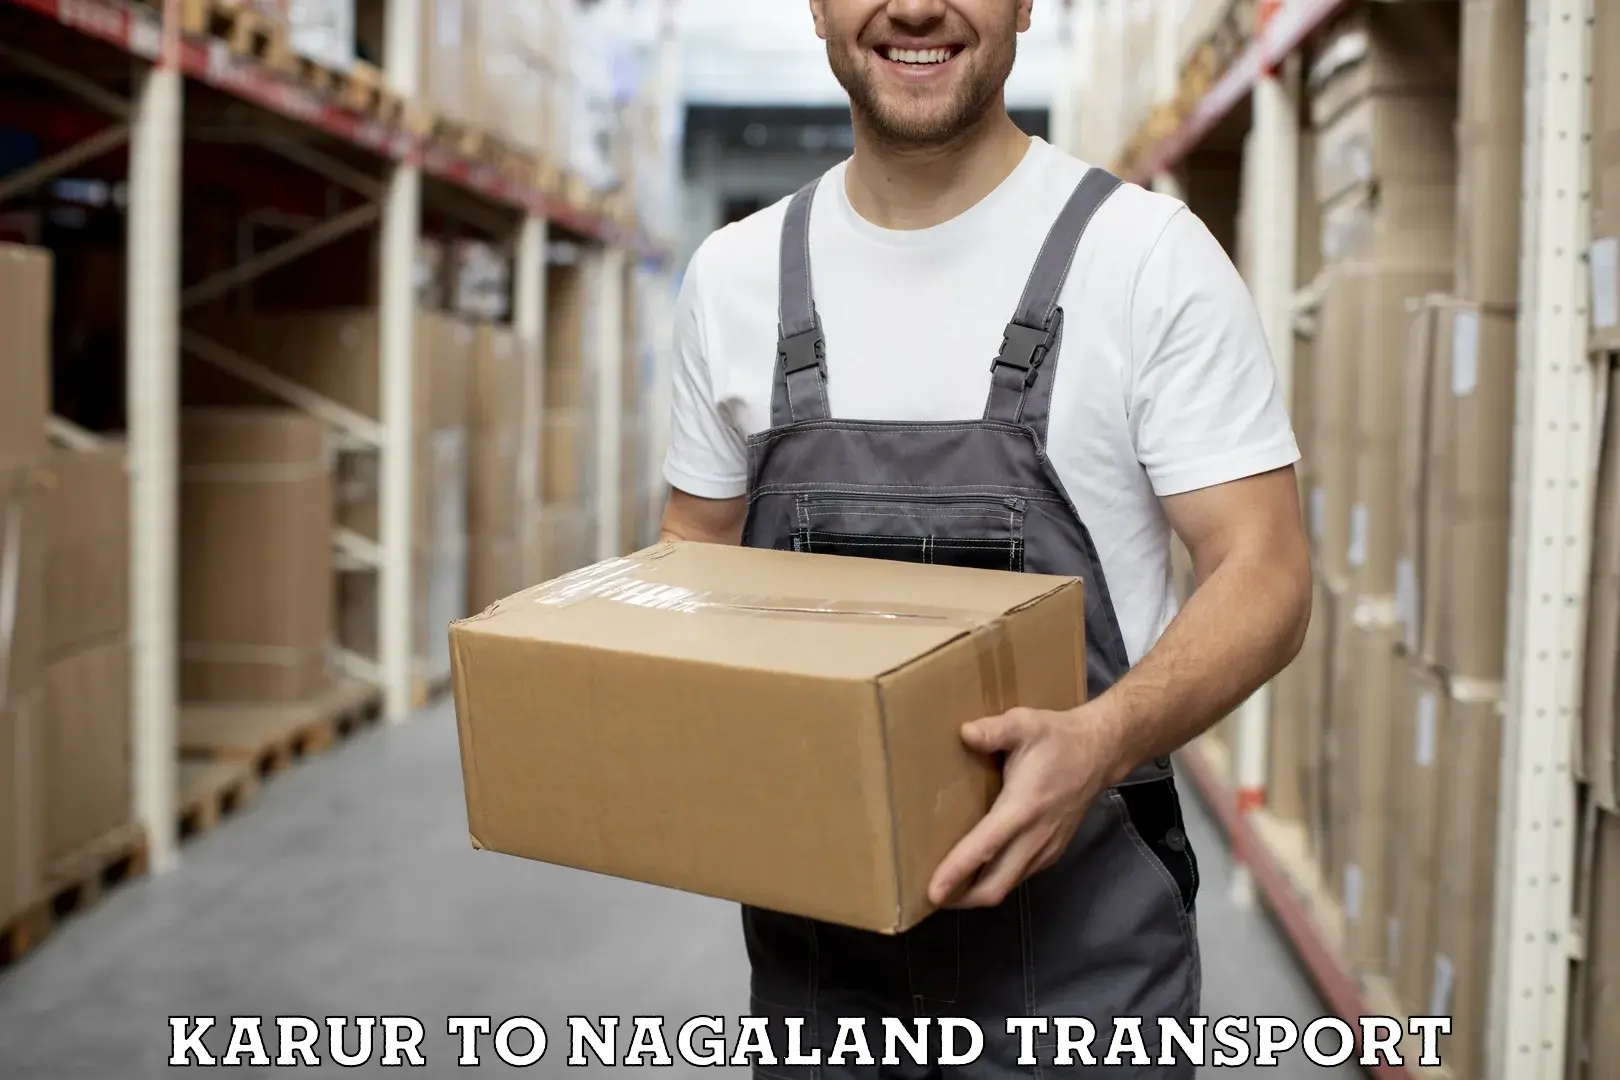 Vehicle parcel service Karur to Dimapur